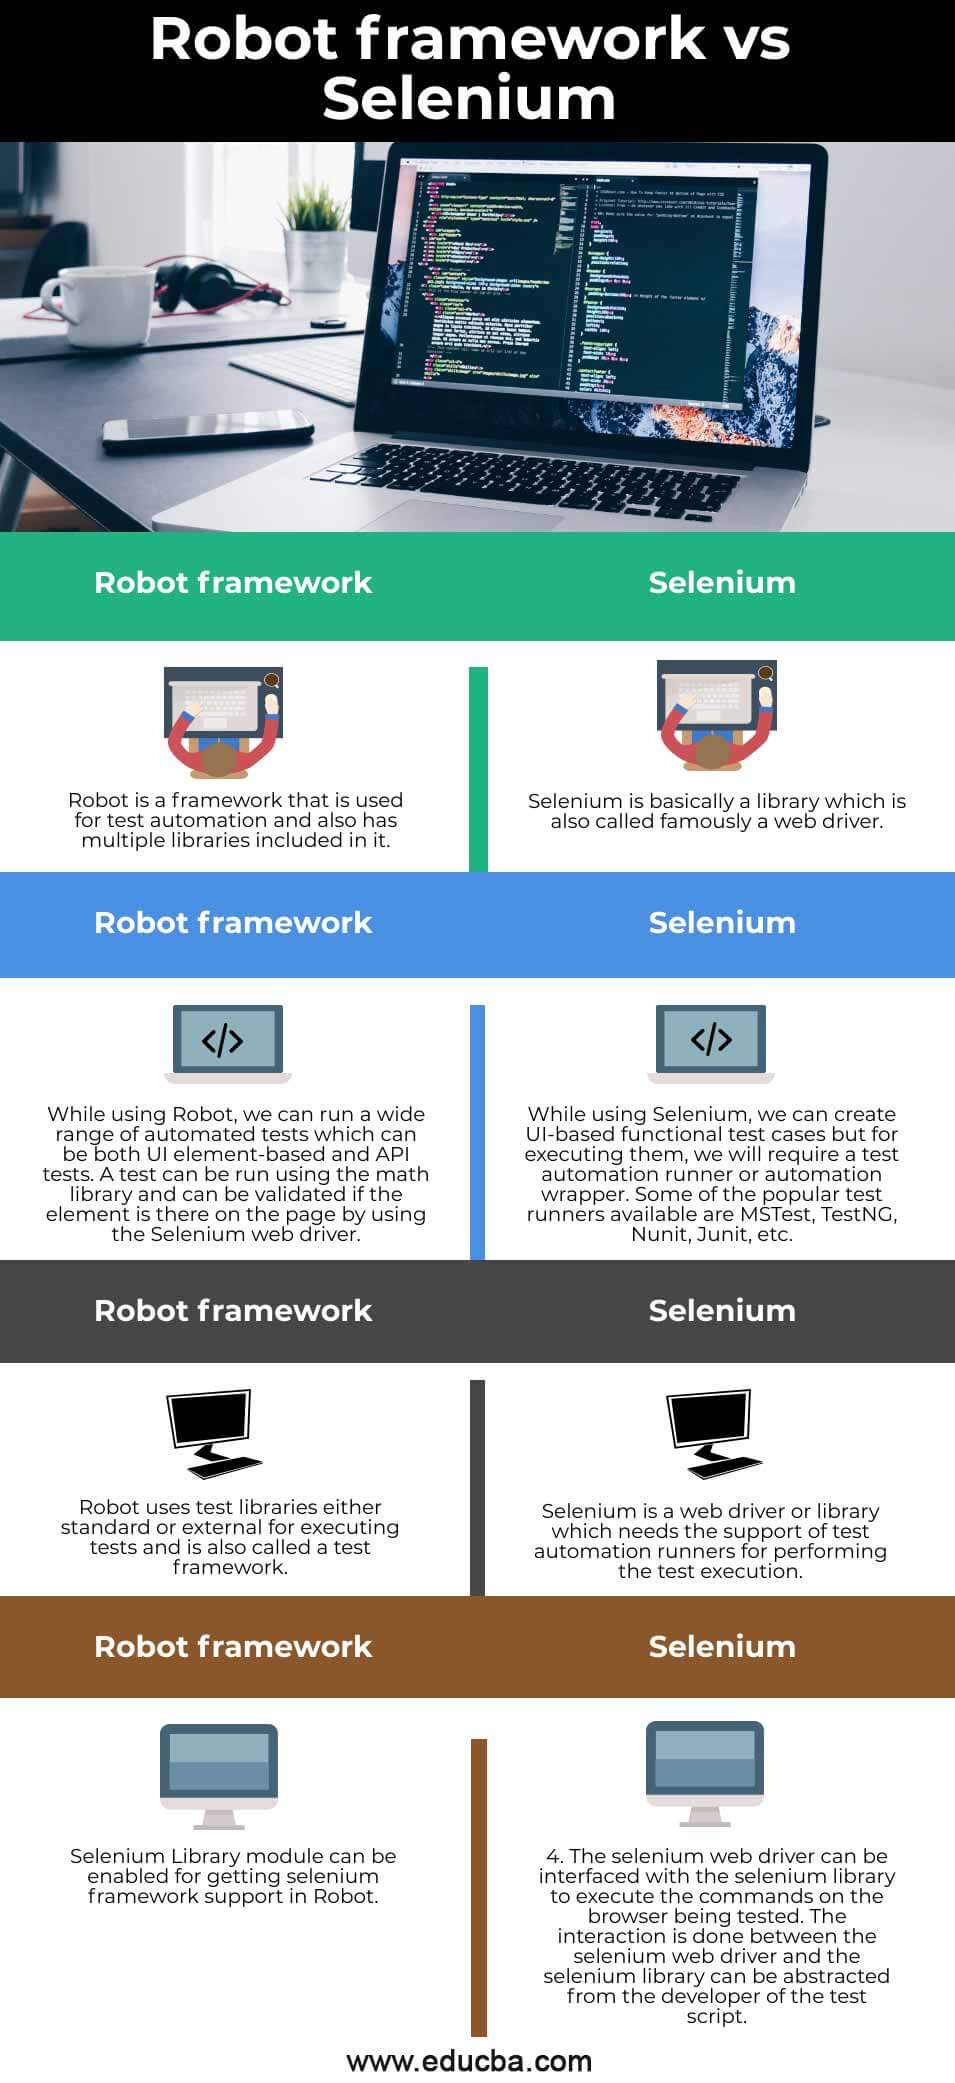 Robot-framework-vs-Selenium-info